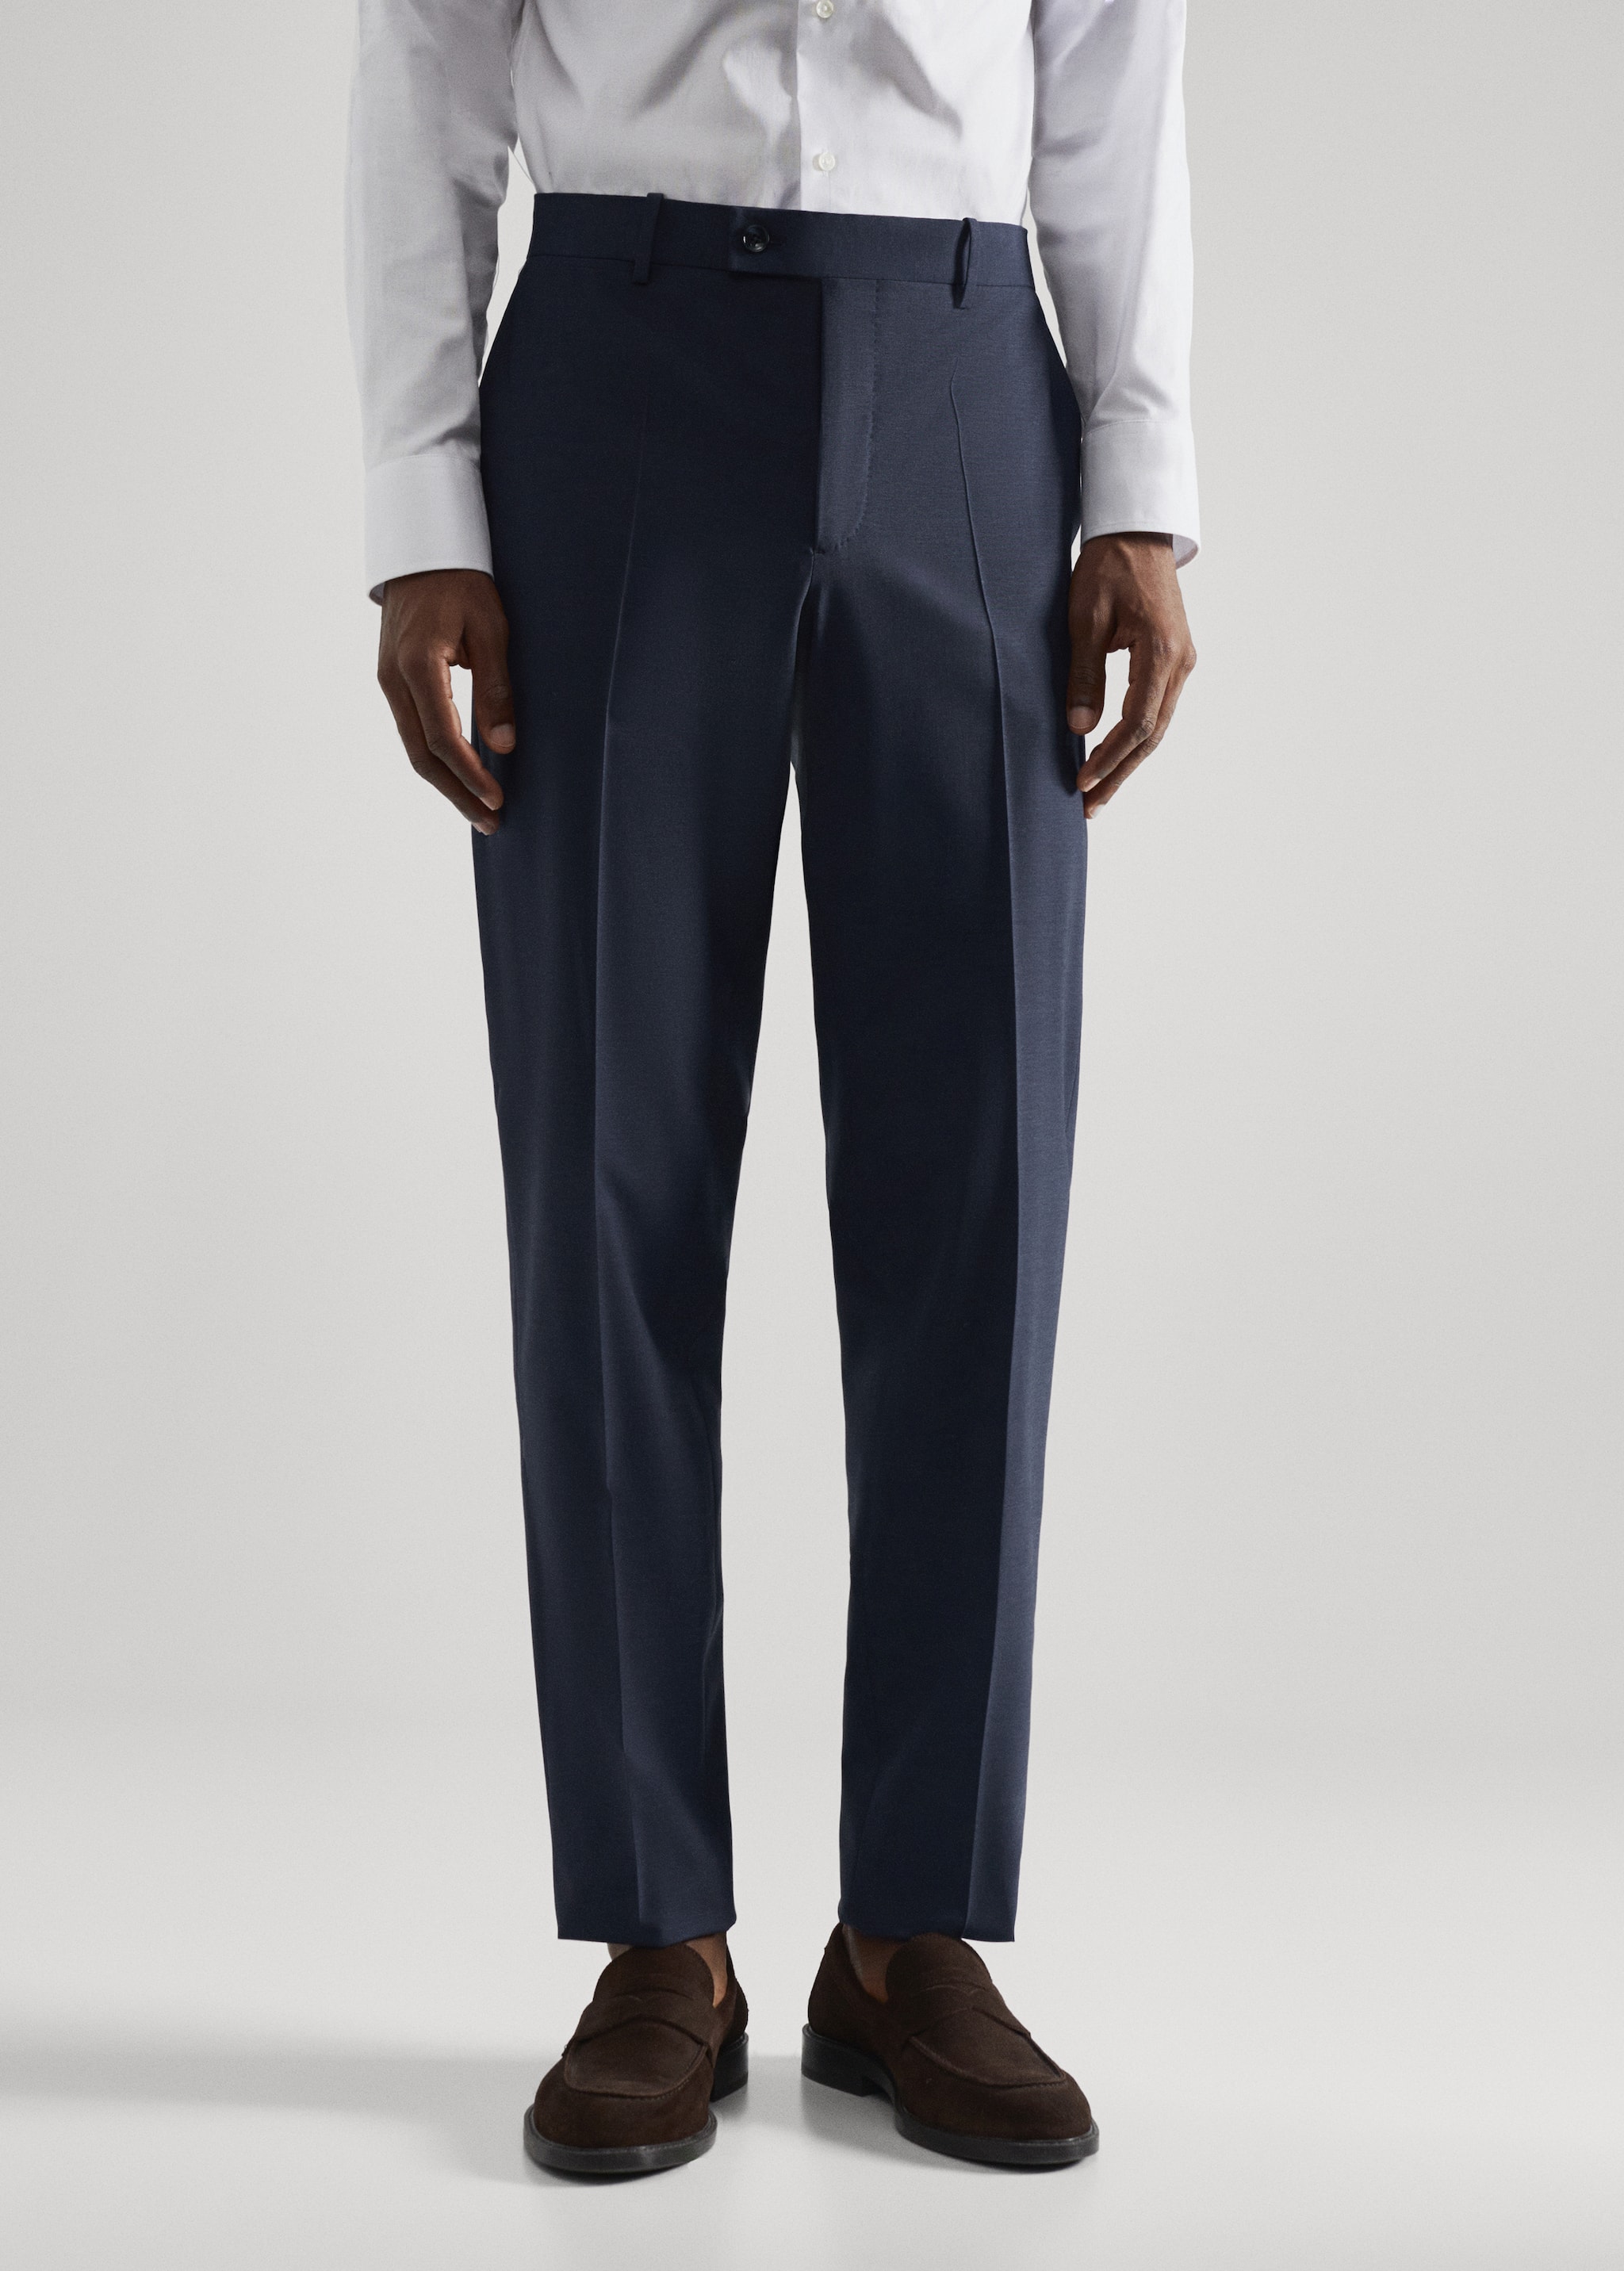 Lněné oblekové kalhoty slim fit - Náhled ve středové rovině